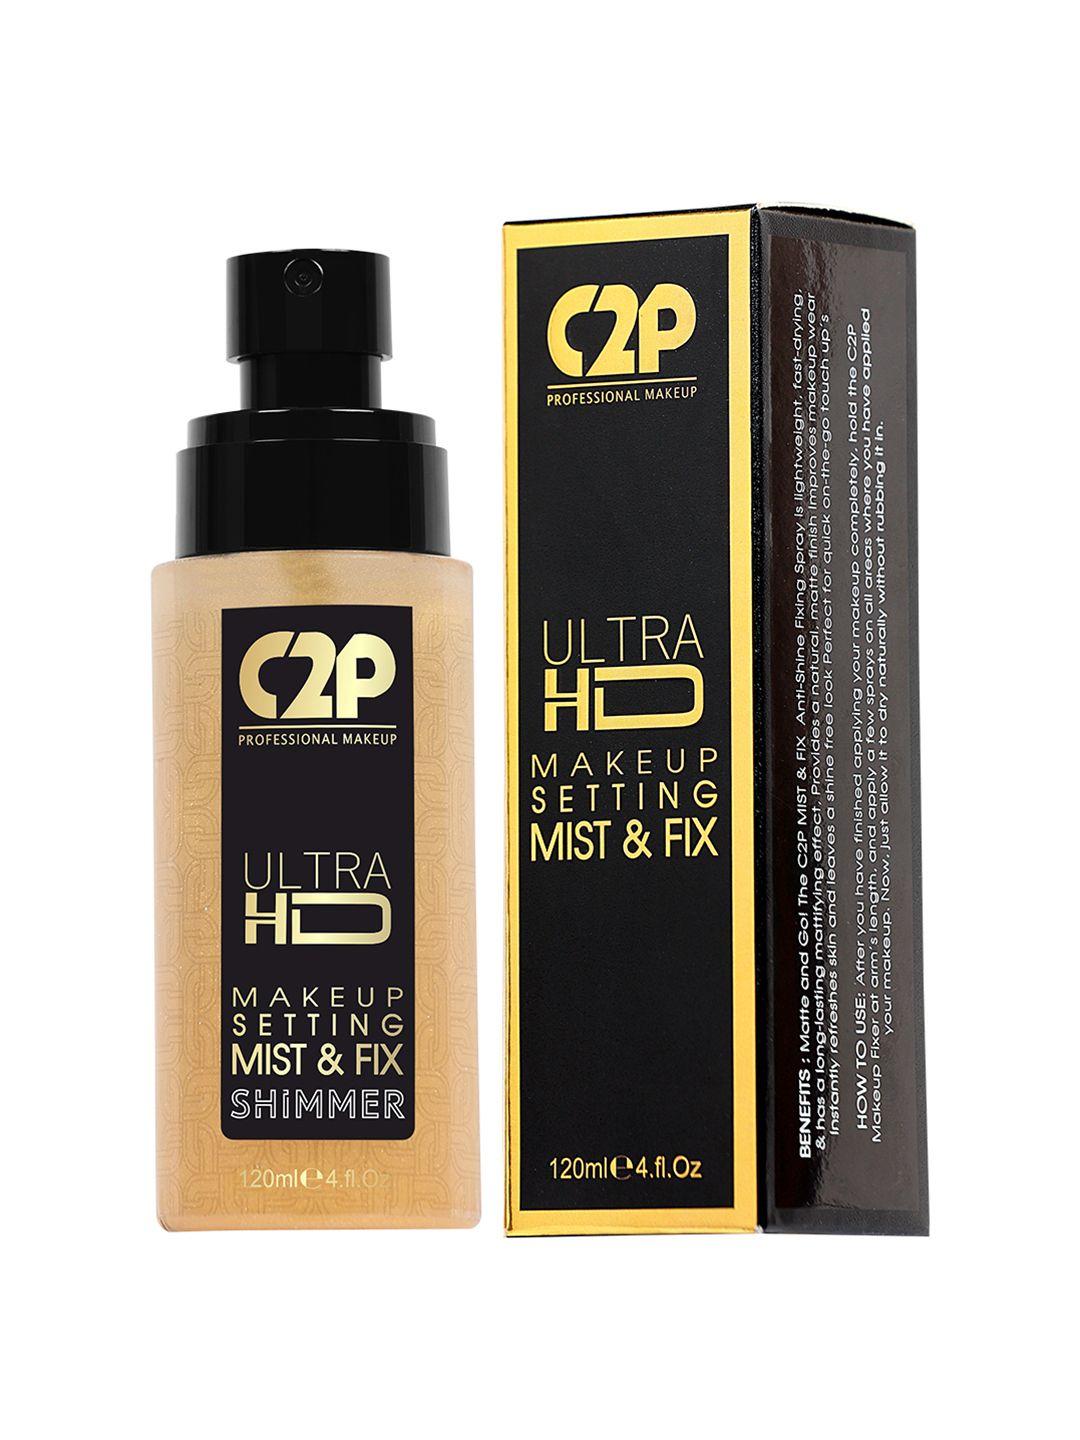 c2p professional makeup ultra hd makeup setting mist & fix - shimmer - gold goddess 02